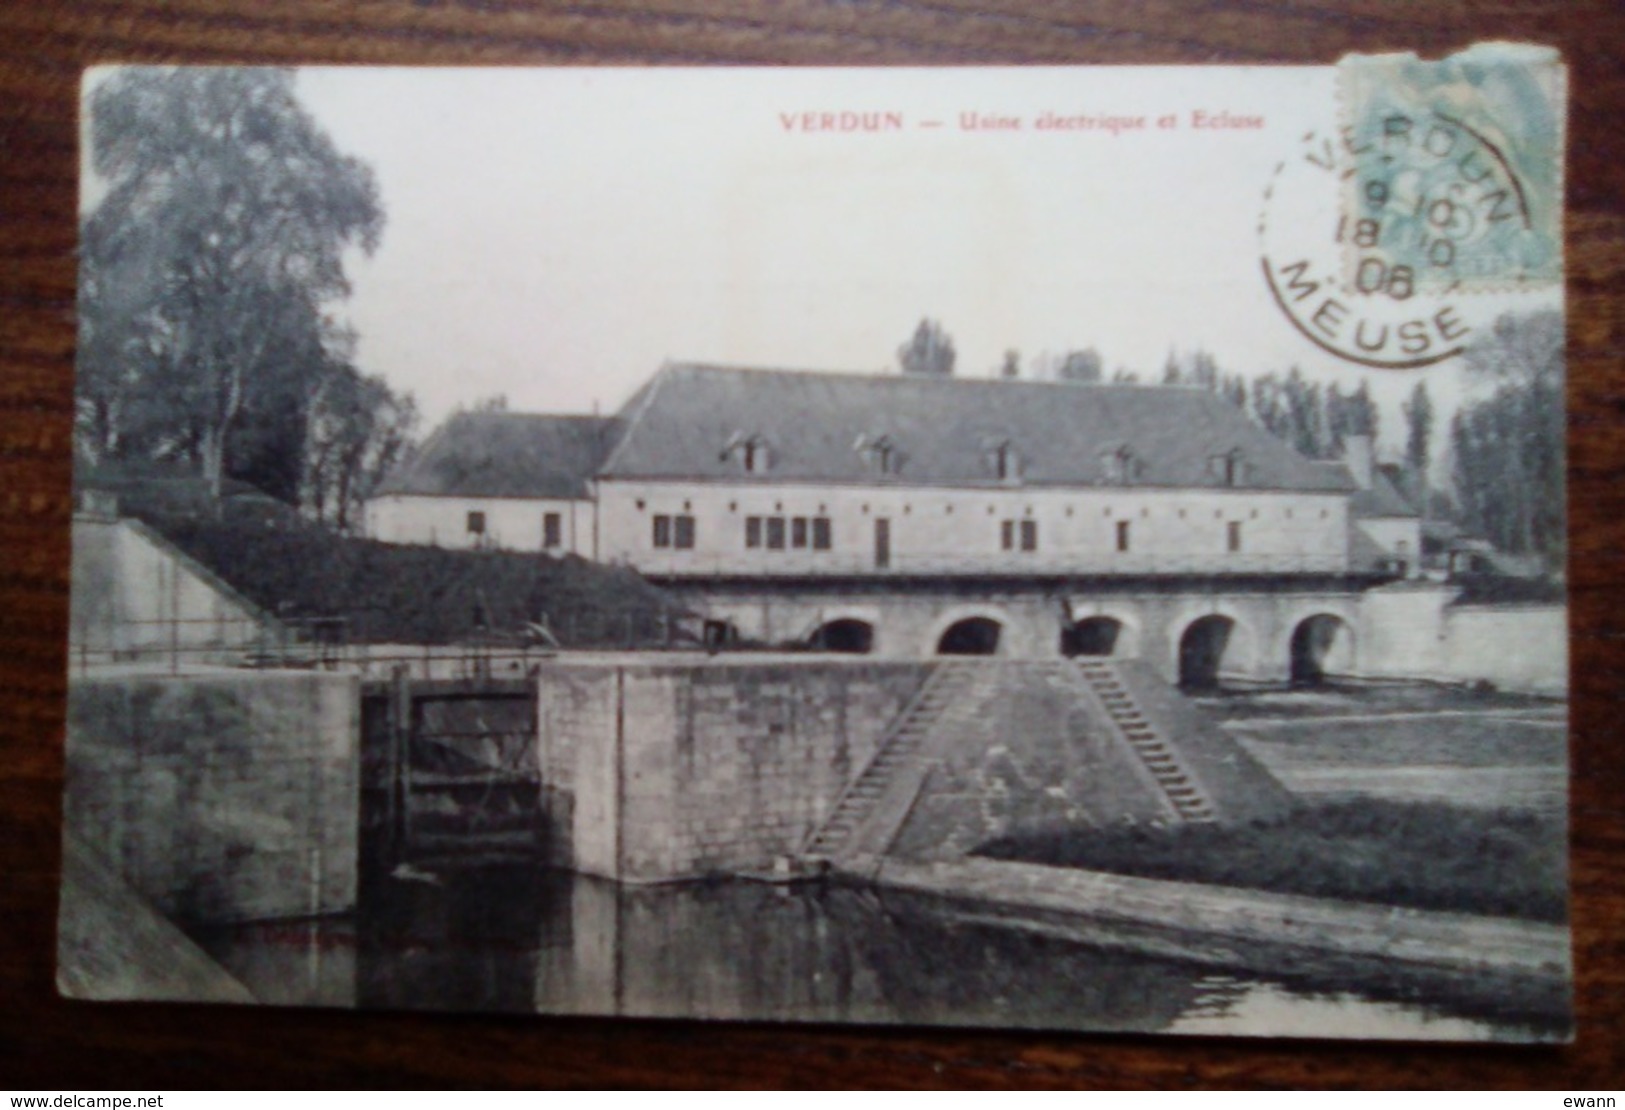 Carte Postale Ancienne De Verdun - Usine électrique Et Ecluse - Verdun